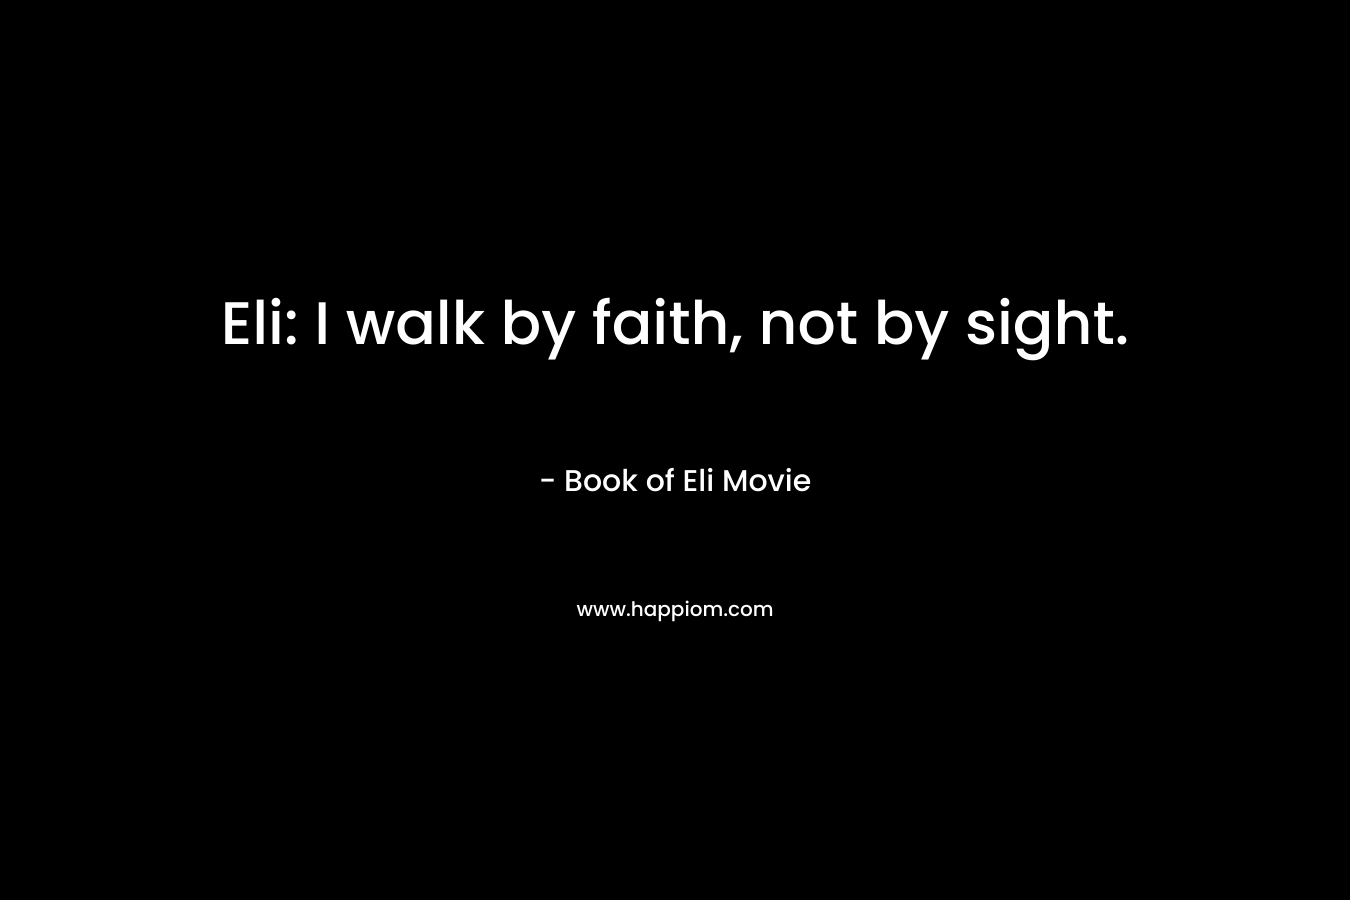 Eli: I walk by faith, not by sight.